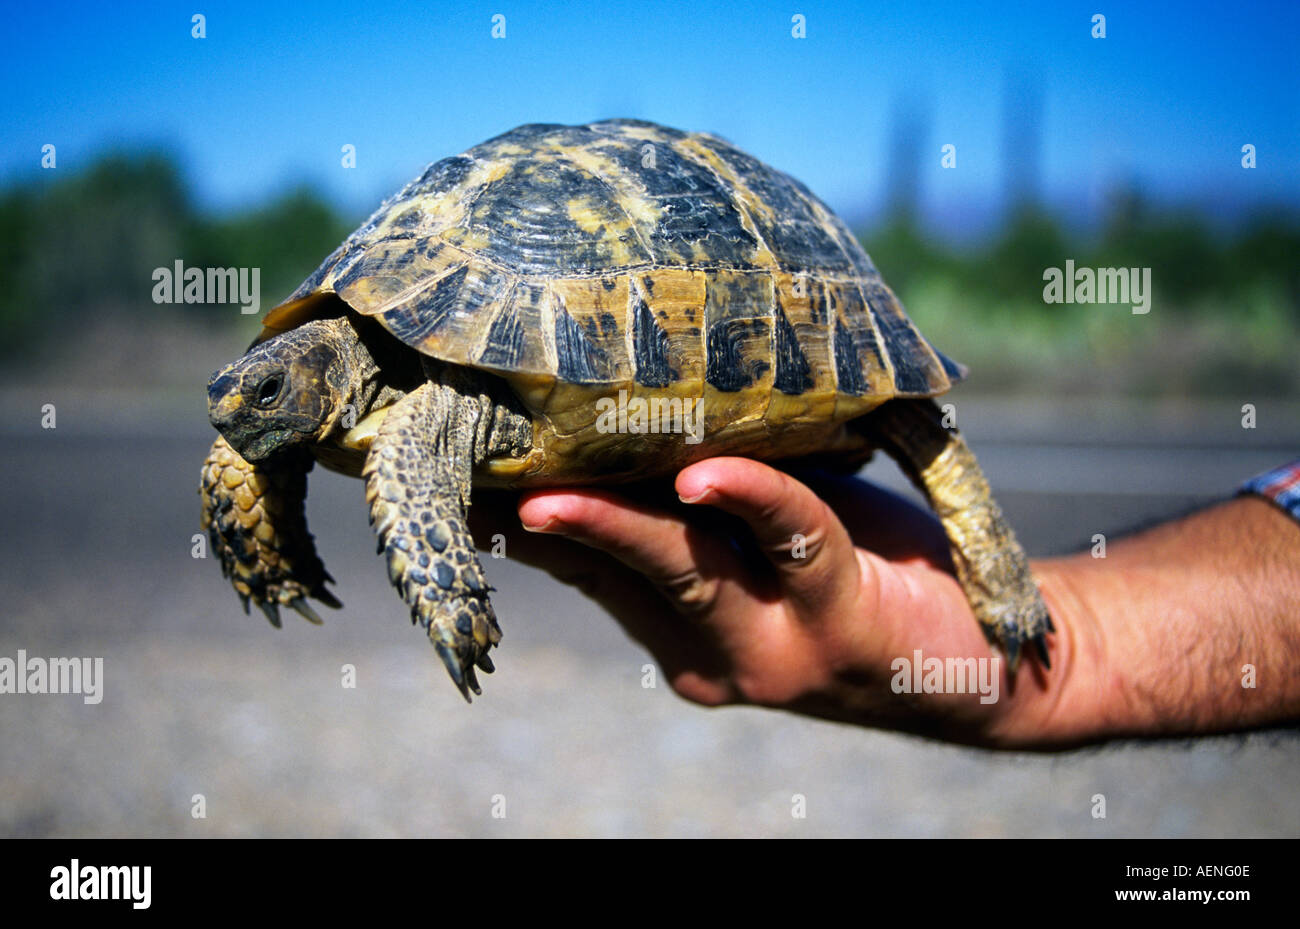 Alguien sostenga un marroquí tortugas testudo graeca en su mano Agadir Marruecos africa Foto de stock